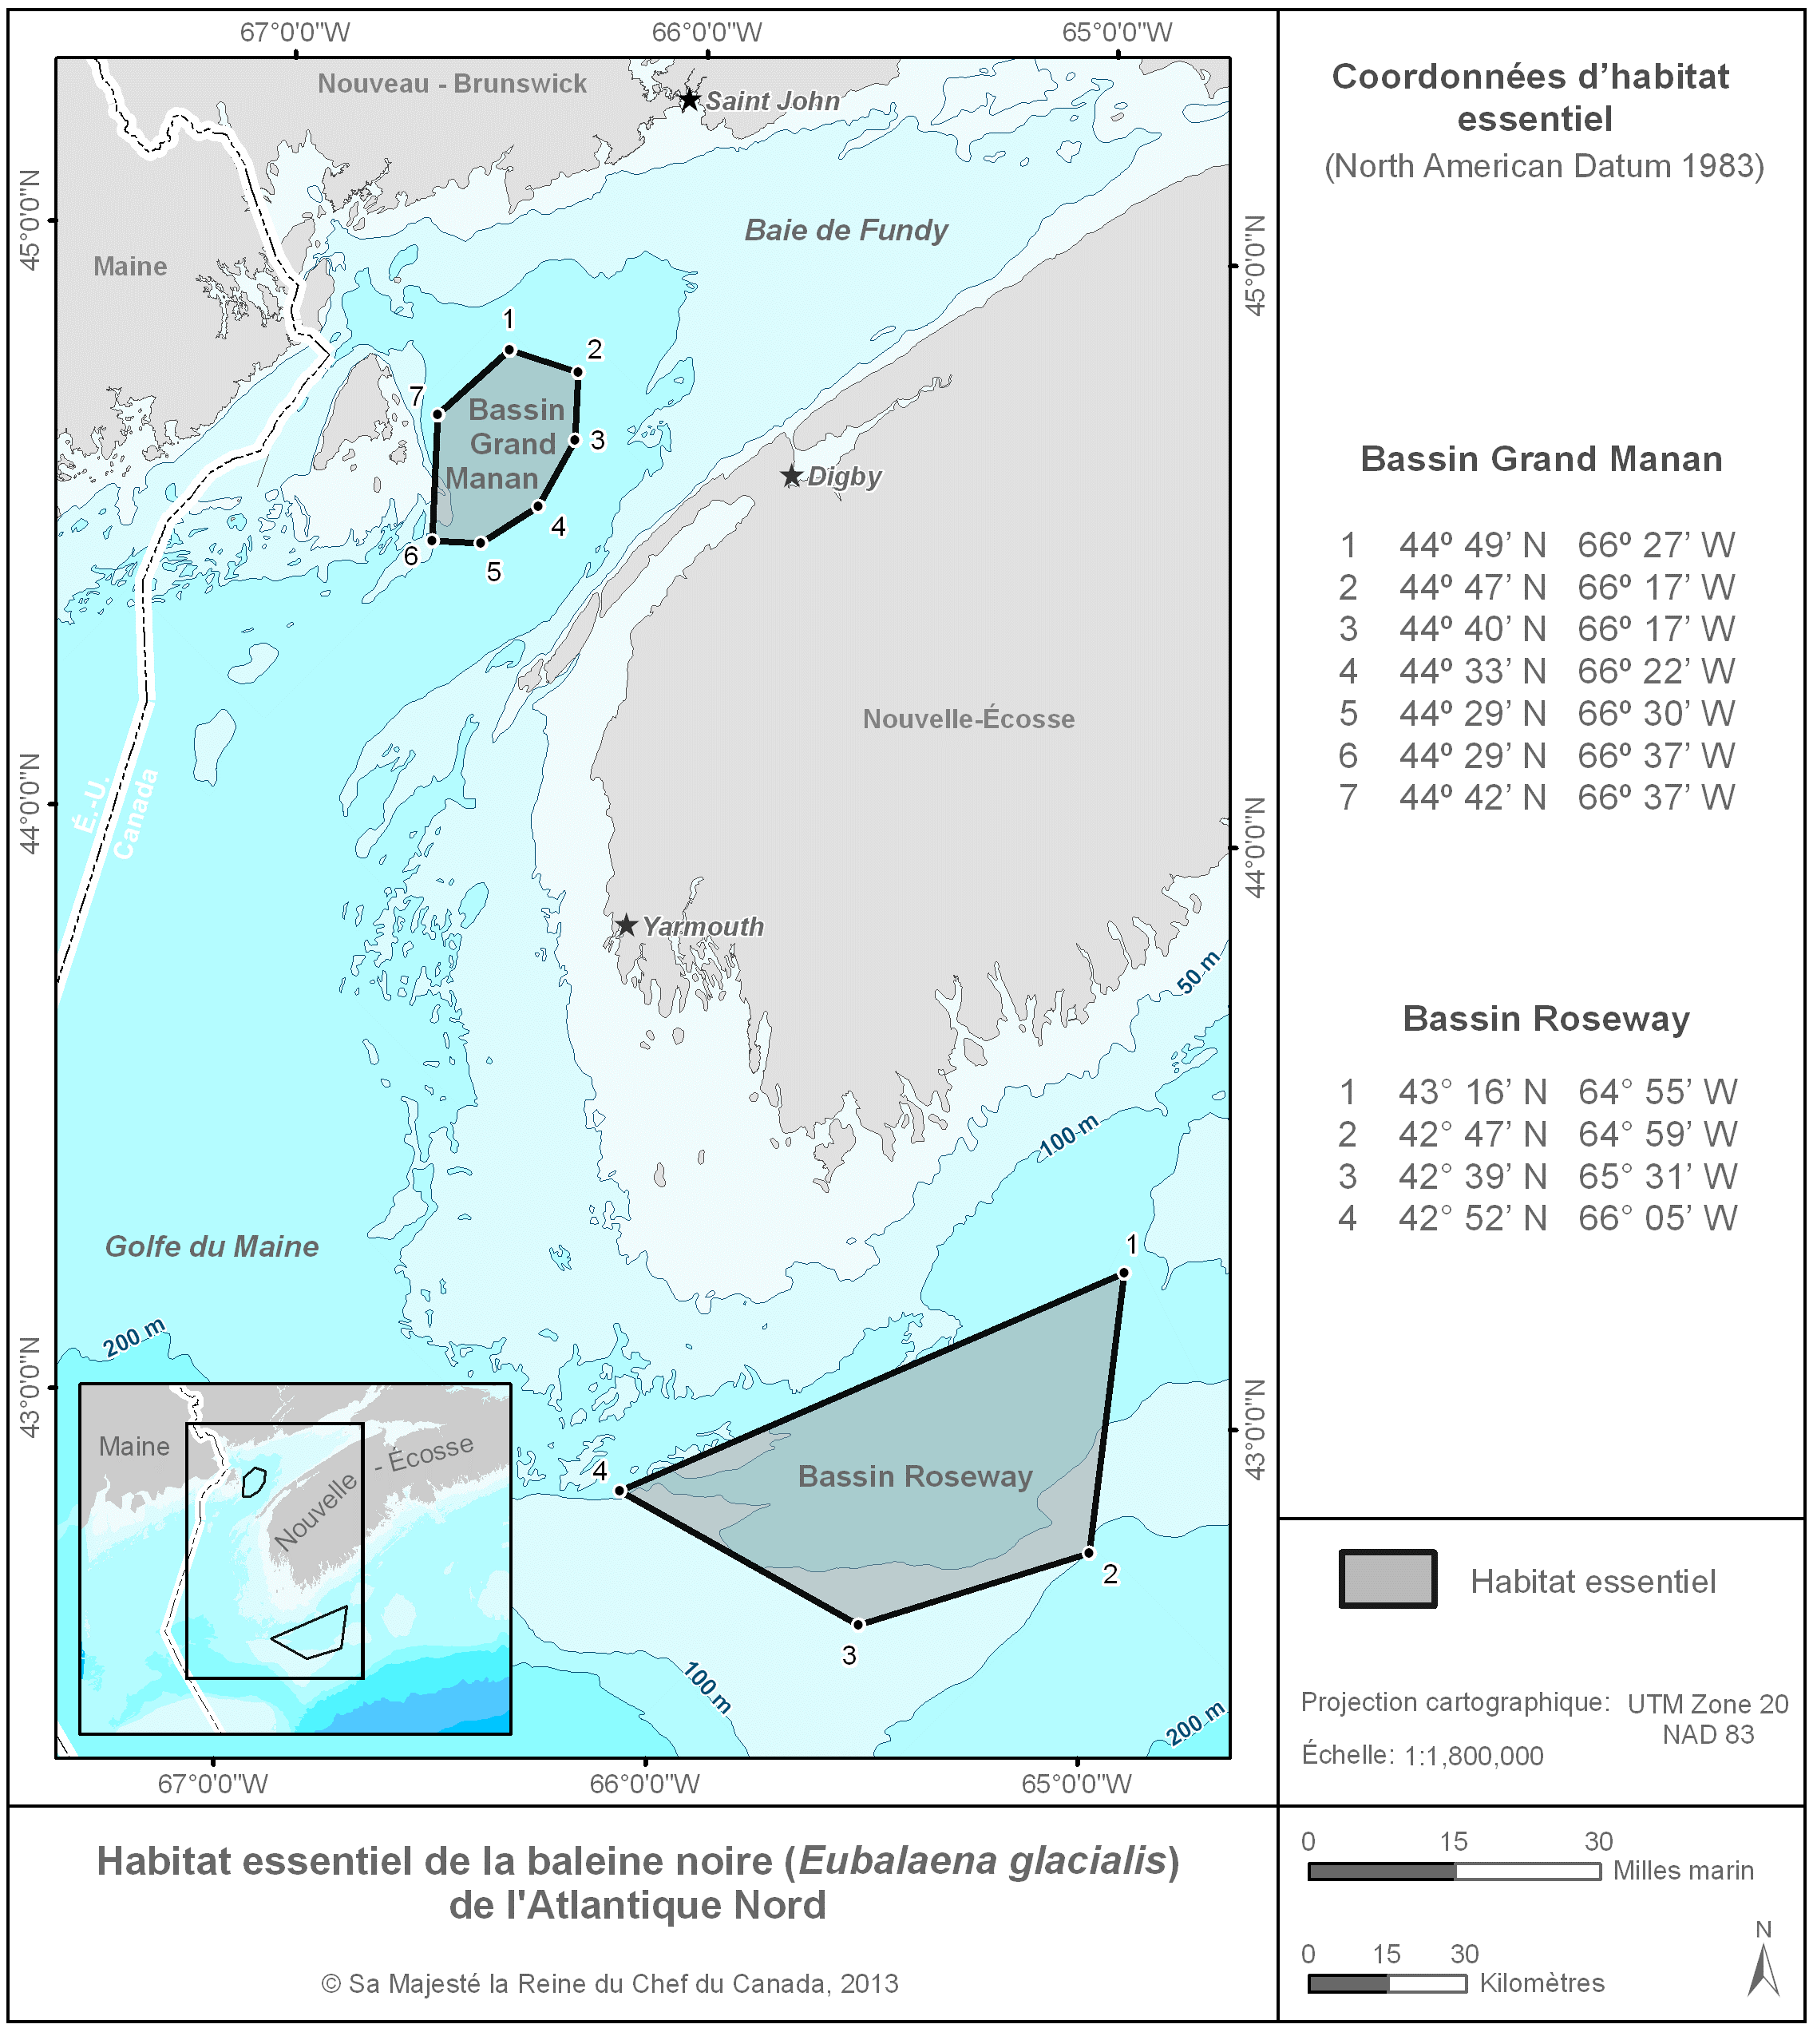 Carte rectangulaire
                     bleue et grise illustrant l'habitat essentiel de la baleine
                     noire de l'Atlantique Nord, avec les coordonnées du Bassin
                     Grand Manan et du Bassin Roseway.